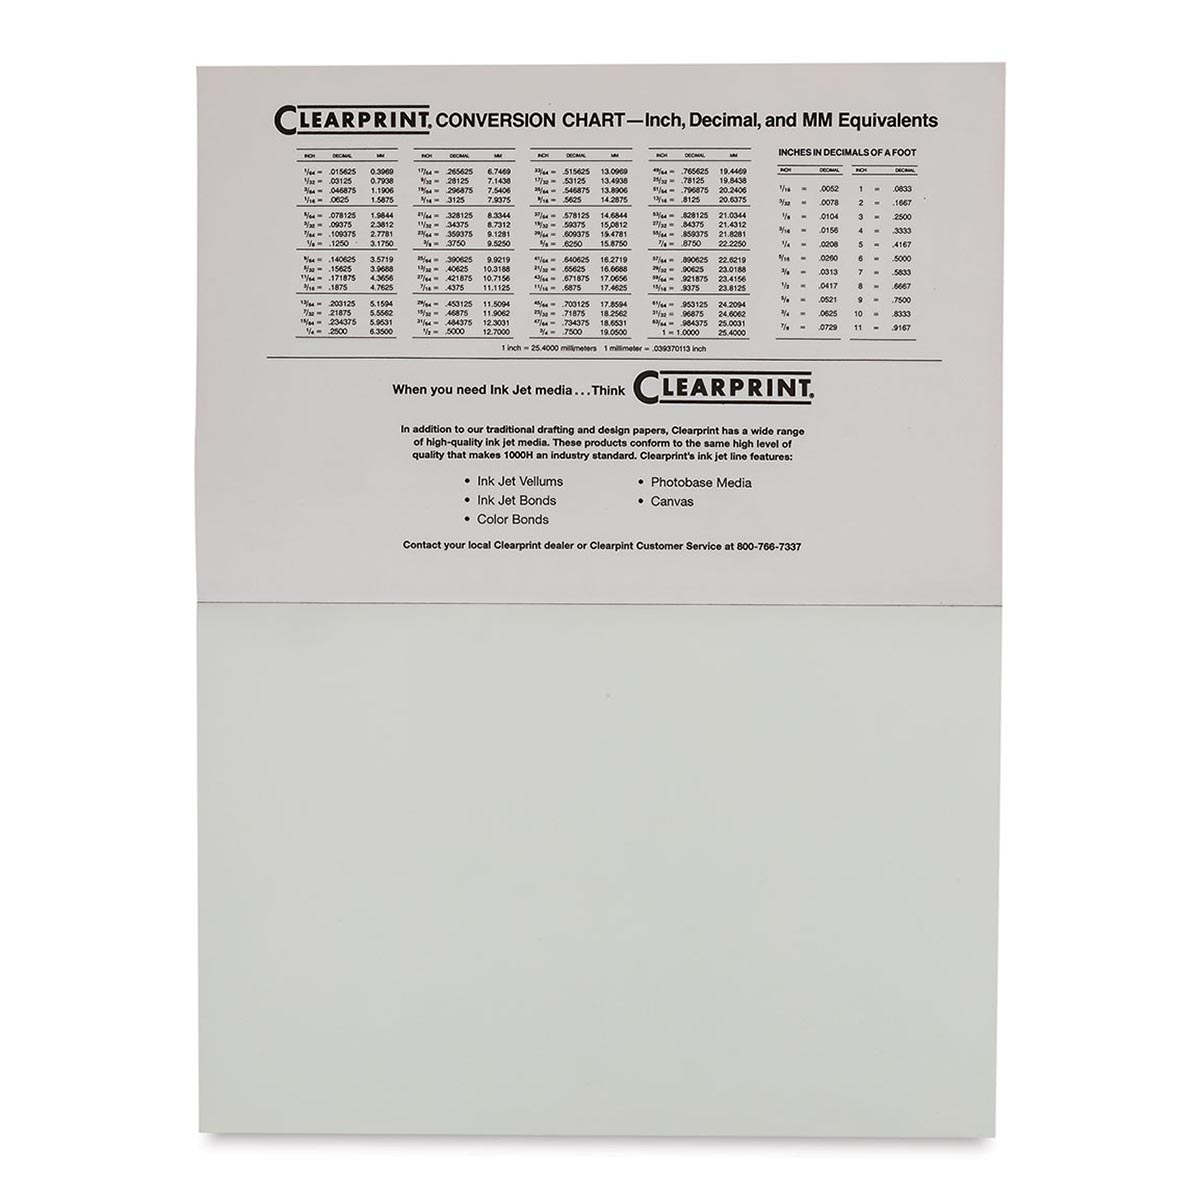 Clearprint 12 x 18 Vellum 1000H-8 - 100 Sheets